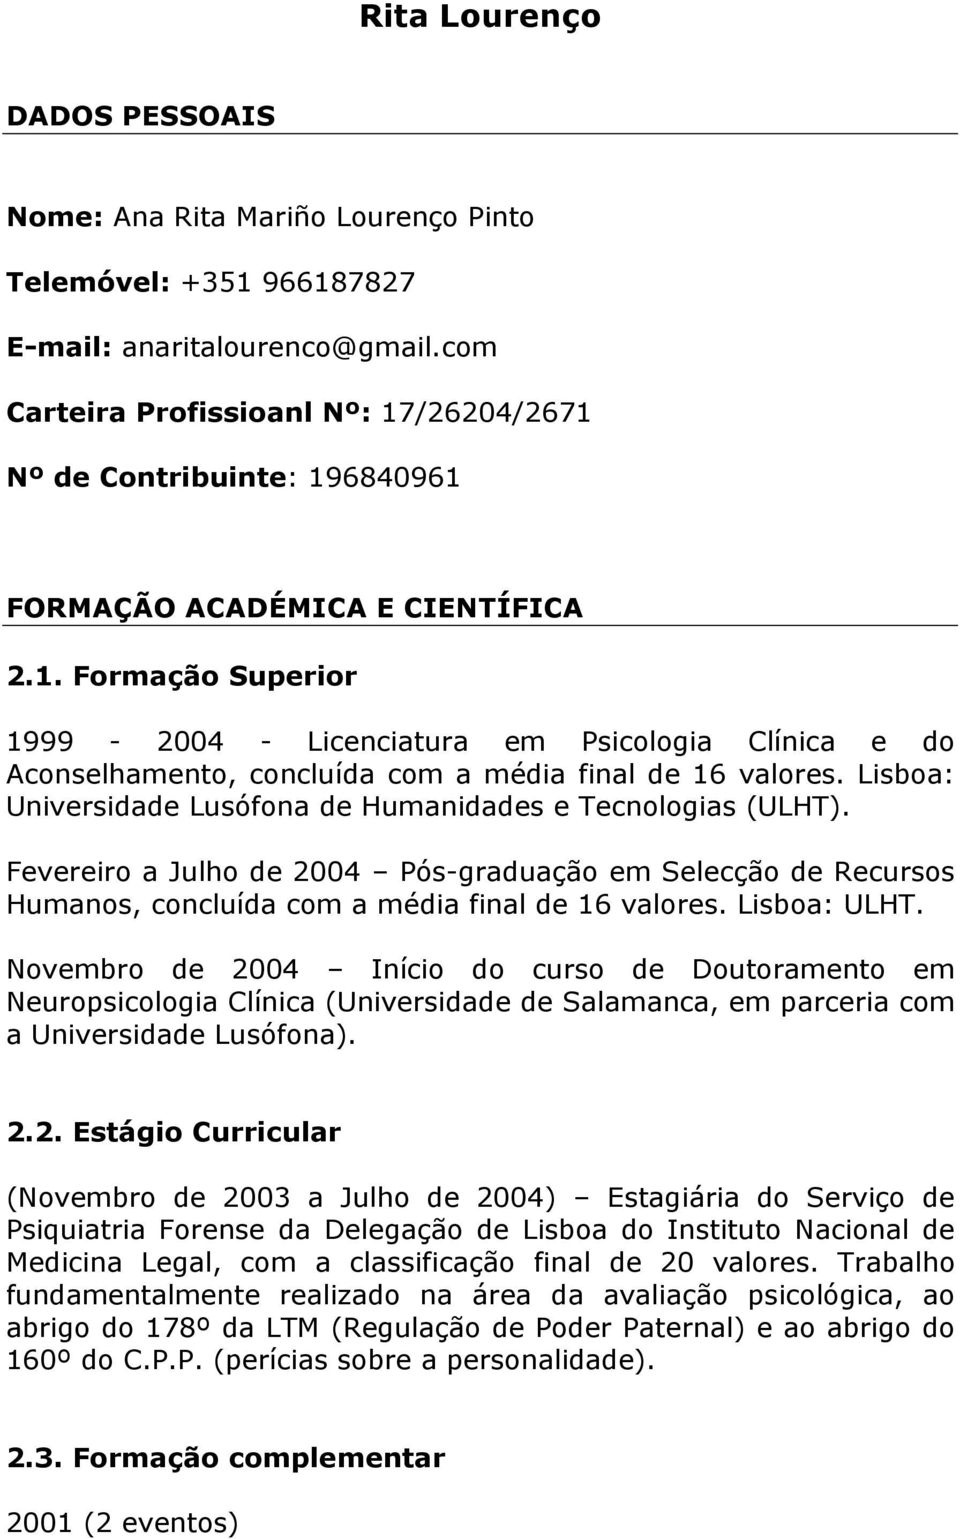 Lisboa: Universidade Lusófona de Humanidades e Tecnologias (ULHT). Fevereiro a Julho de 2004 Pós-graduação em Selecção de Recursos Humanos, concluída com a média final de 16 valores. Lisboa: ULHT.